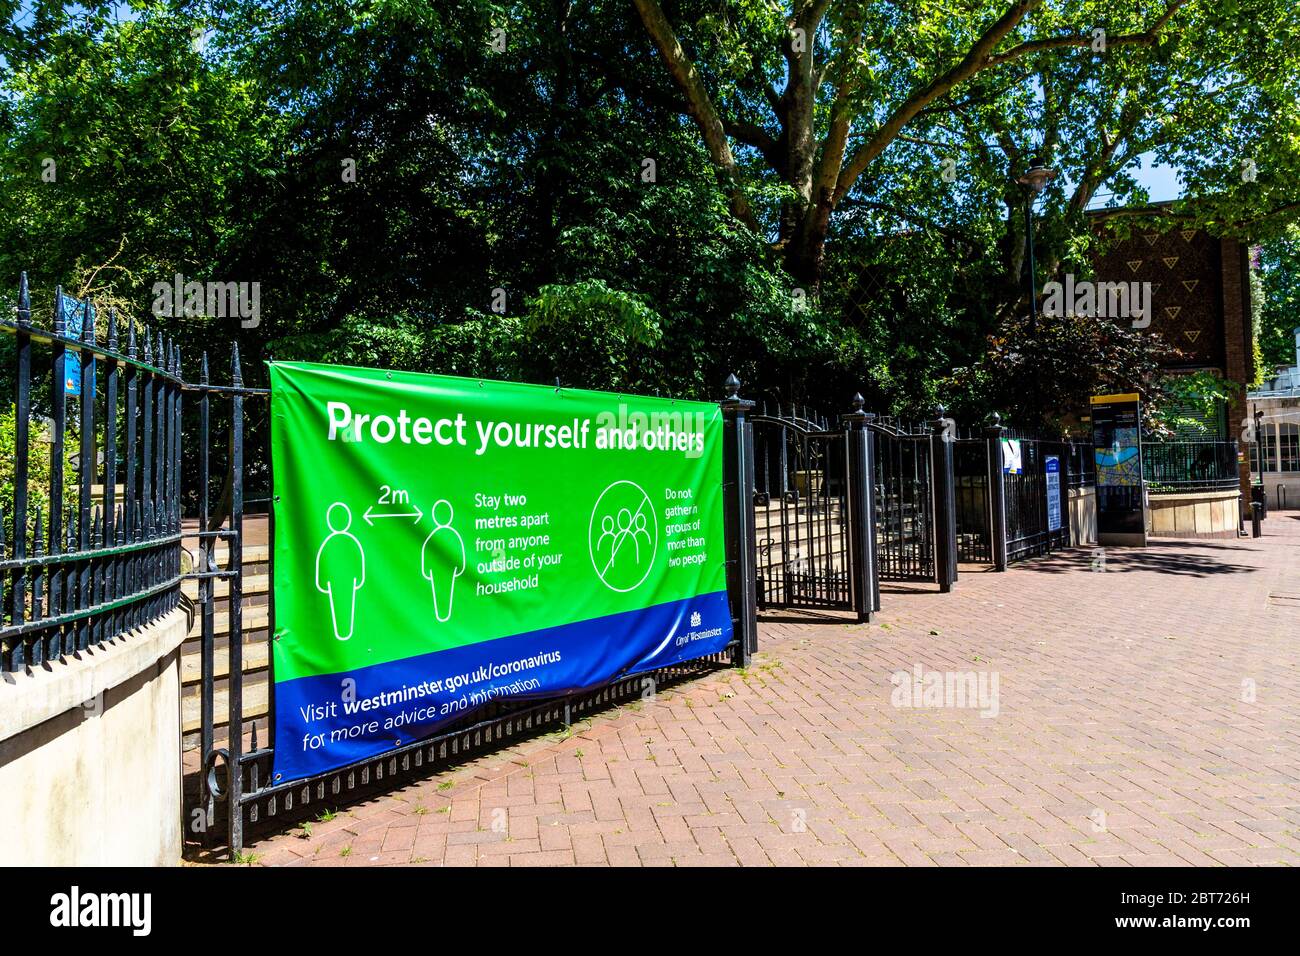 21 mai 2020, Londres, Royaume-Uni - Signez les portes de Victoria Embankment Gardens pour rappeler aux gens de garder une distance de 2 mètres et de suivre les directives du gouvernement sur la prévention de la propagation du coronavirus pendant le confinement pandémique Banque D'Images